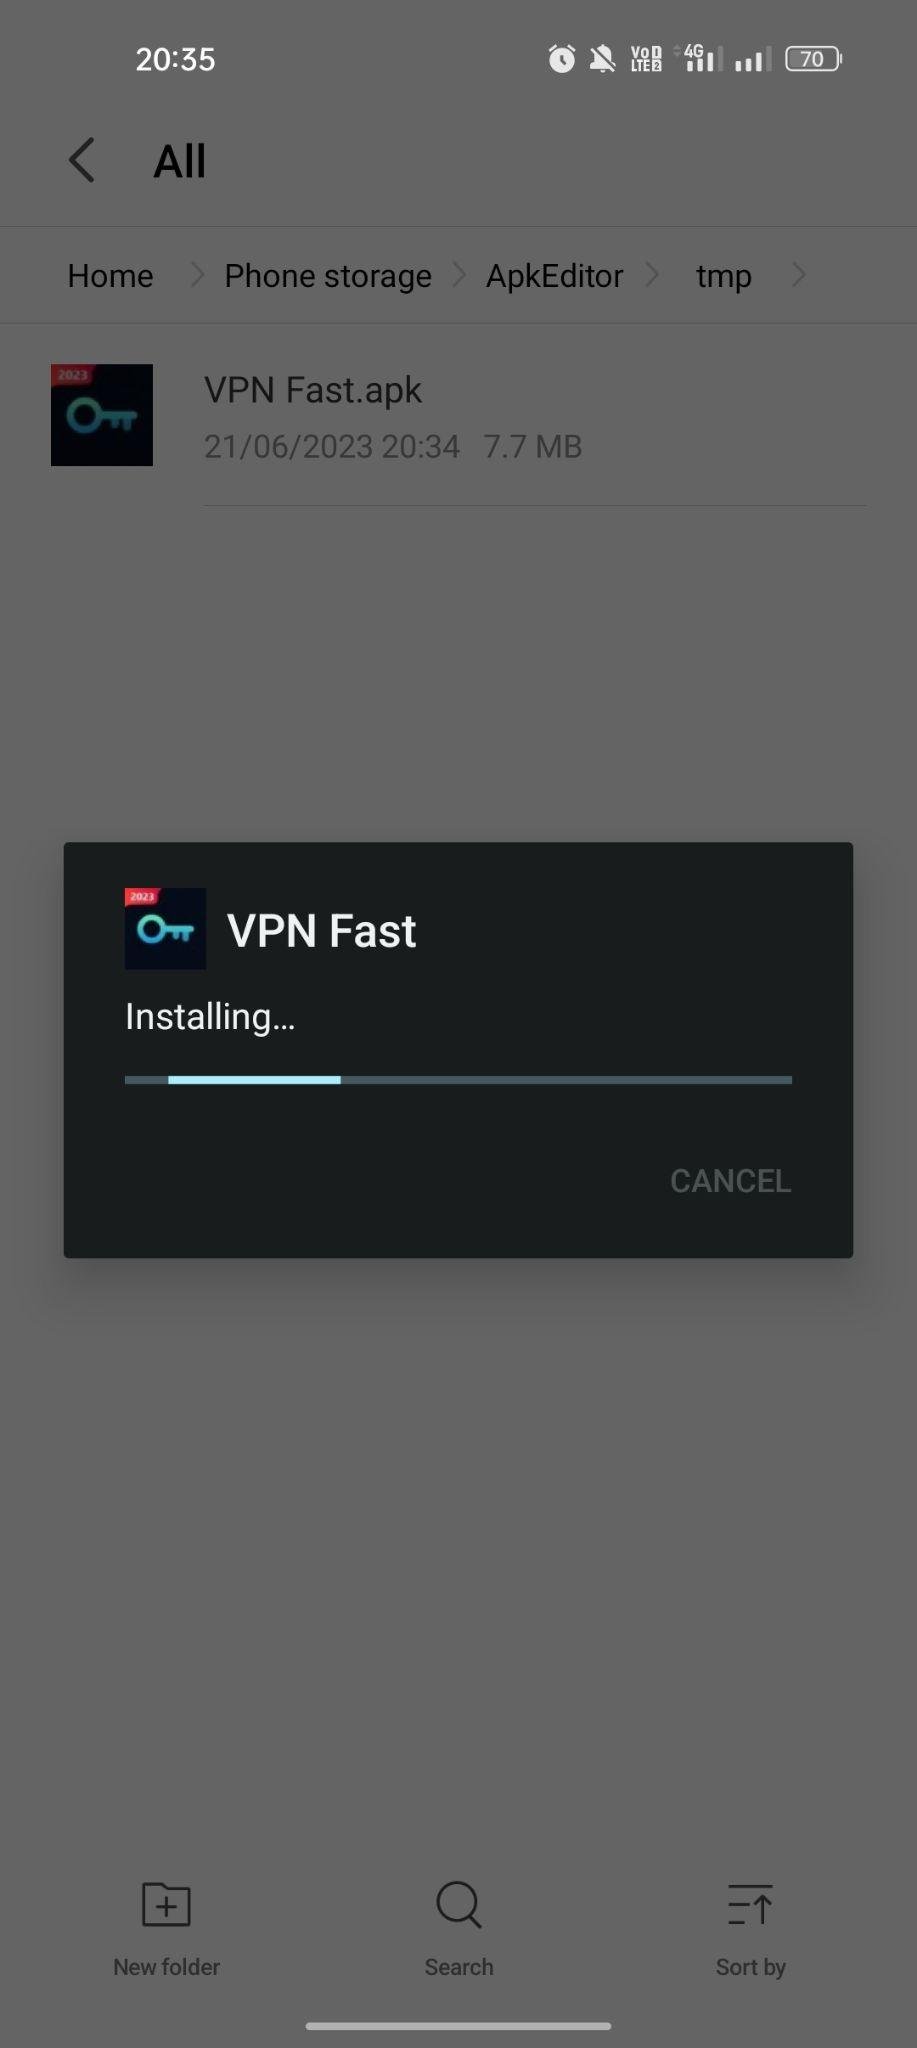 VPN Fast